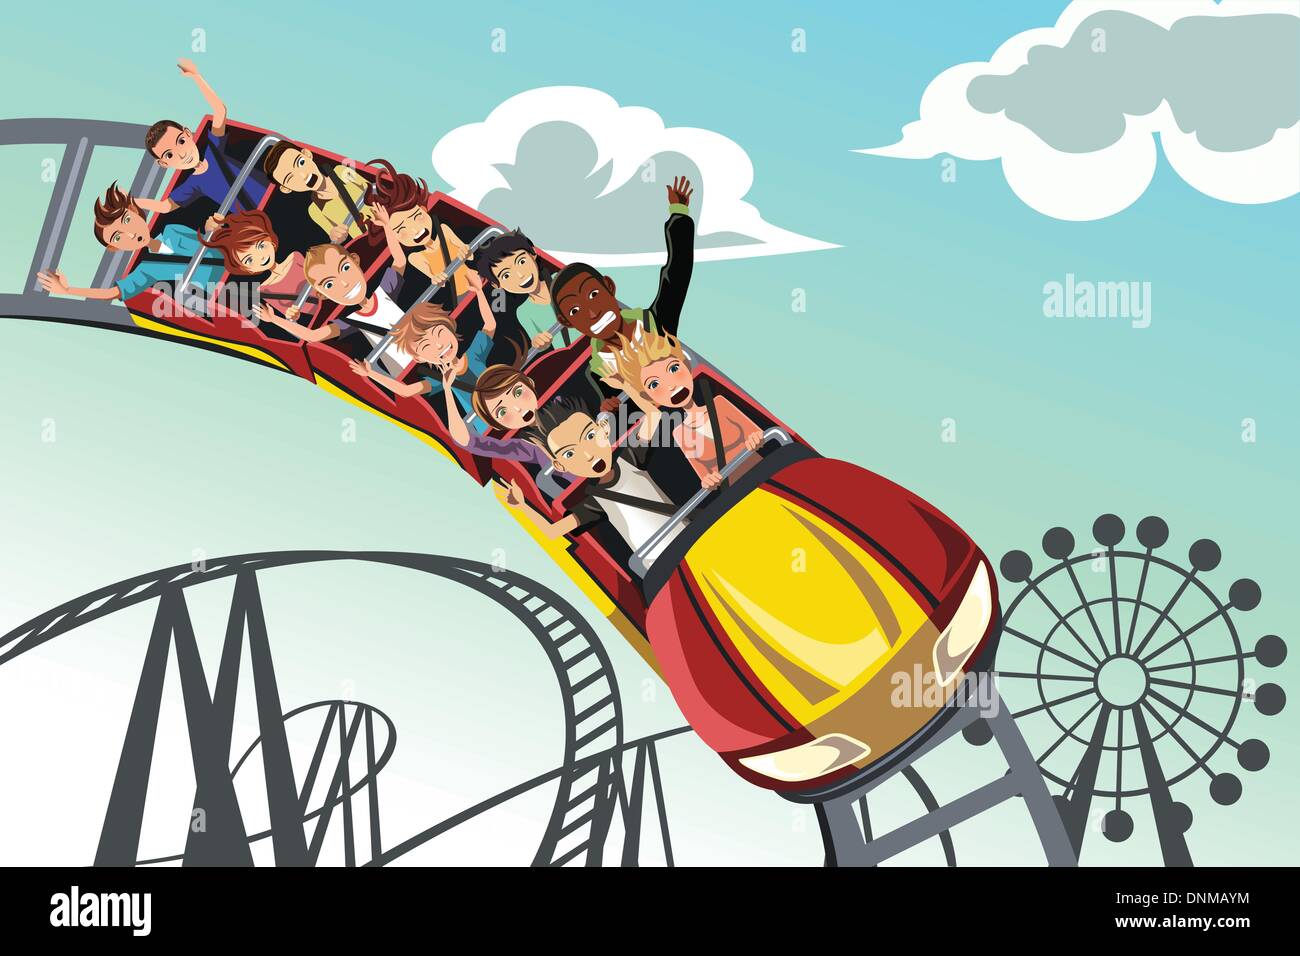 Un vecteur illustration de personnes équitation roller coaster dans un parc d'amusement Illustration de Vecteur